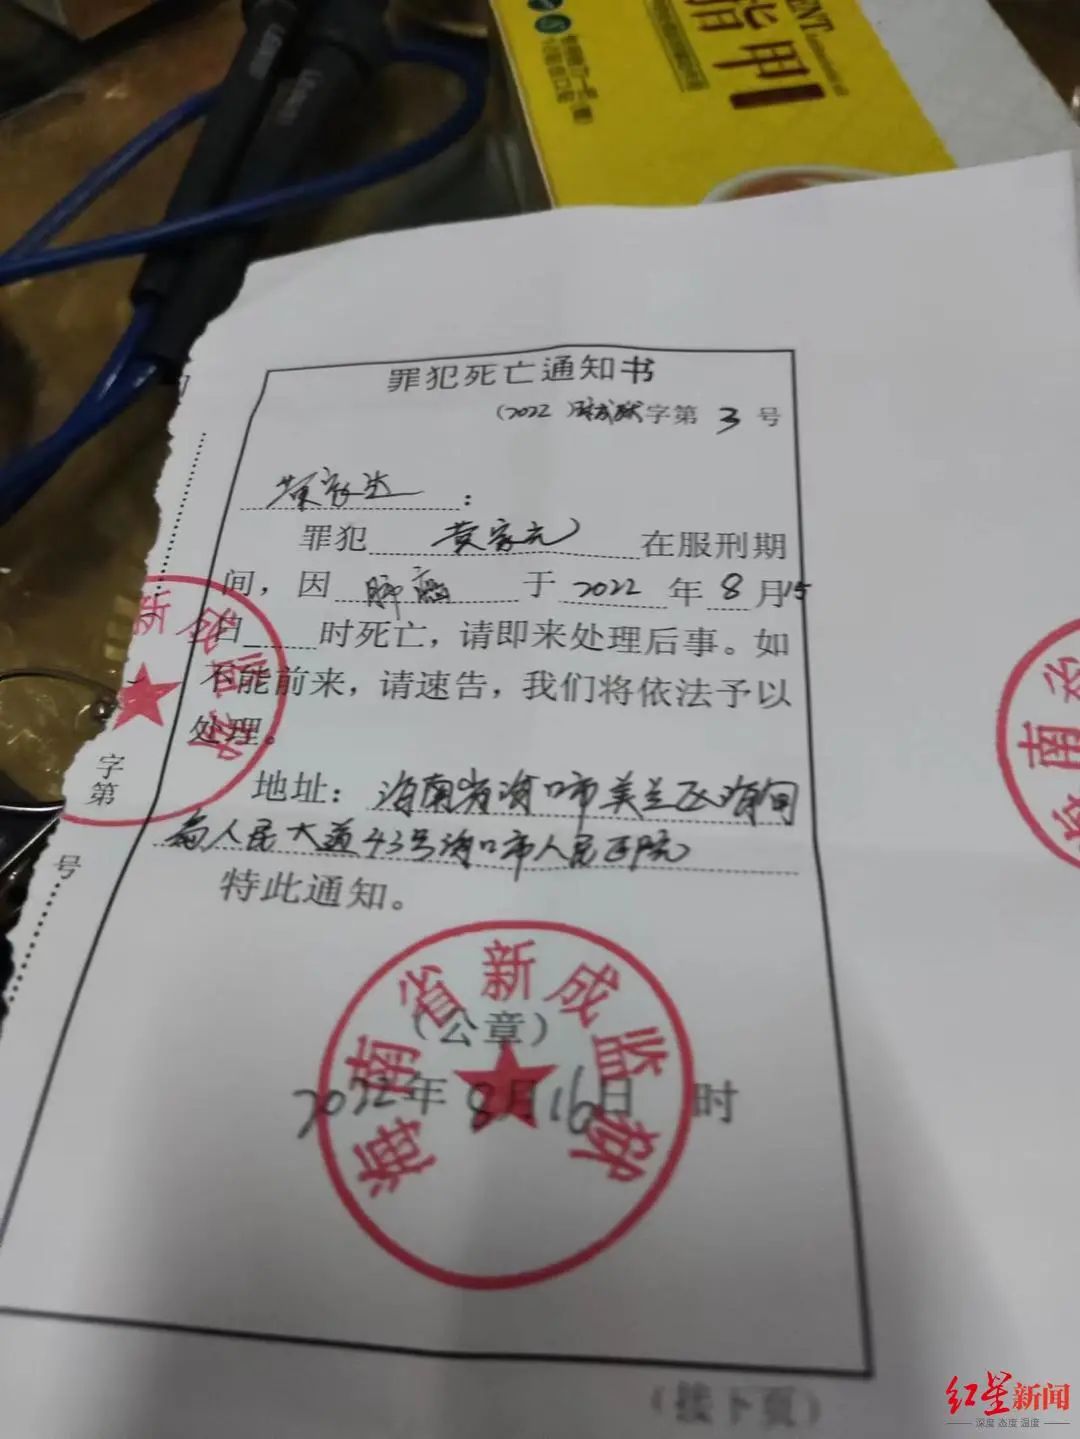 海南省新成监狱于8月16日作出的《罪犯死亡通知书》,通知黄家达请即